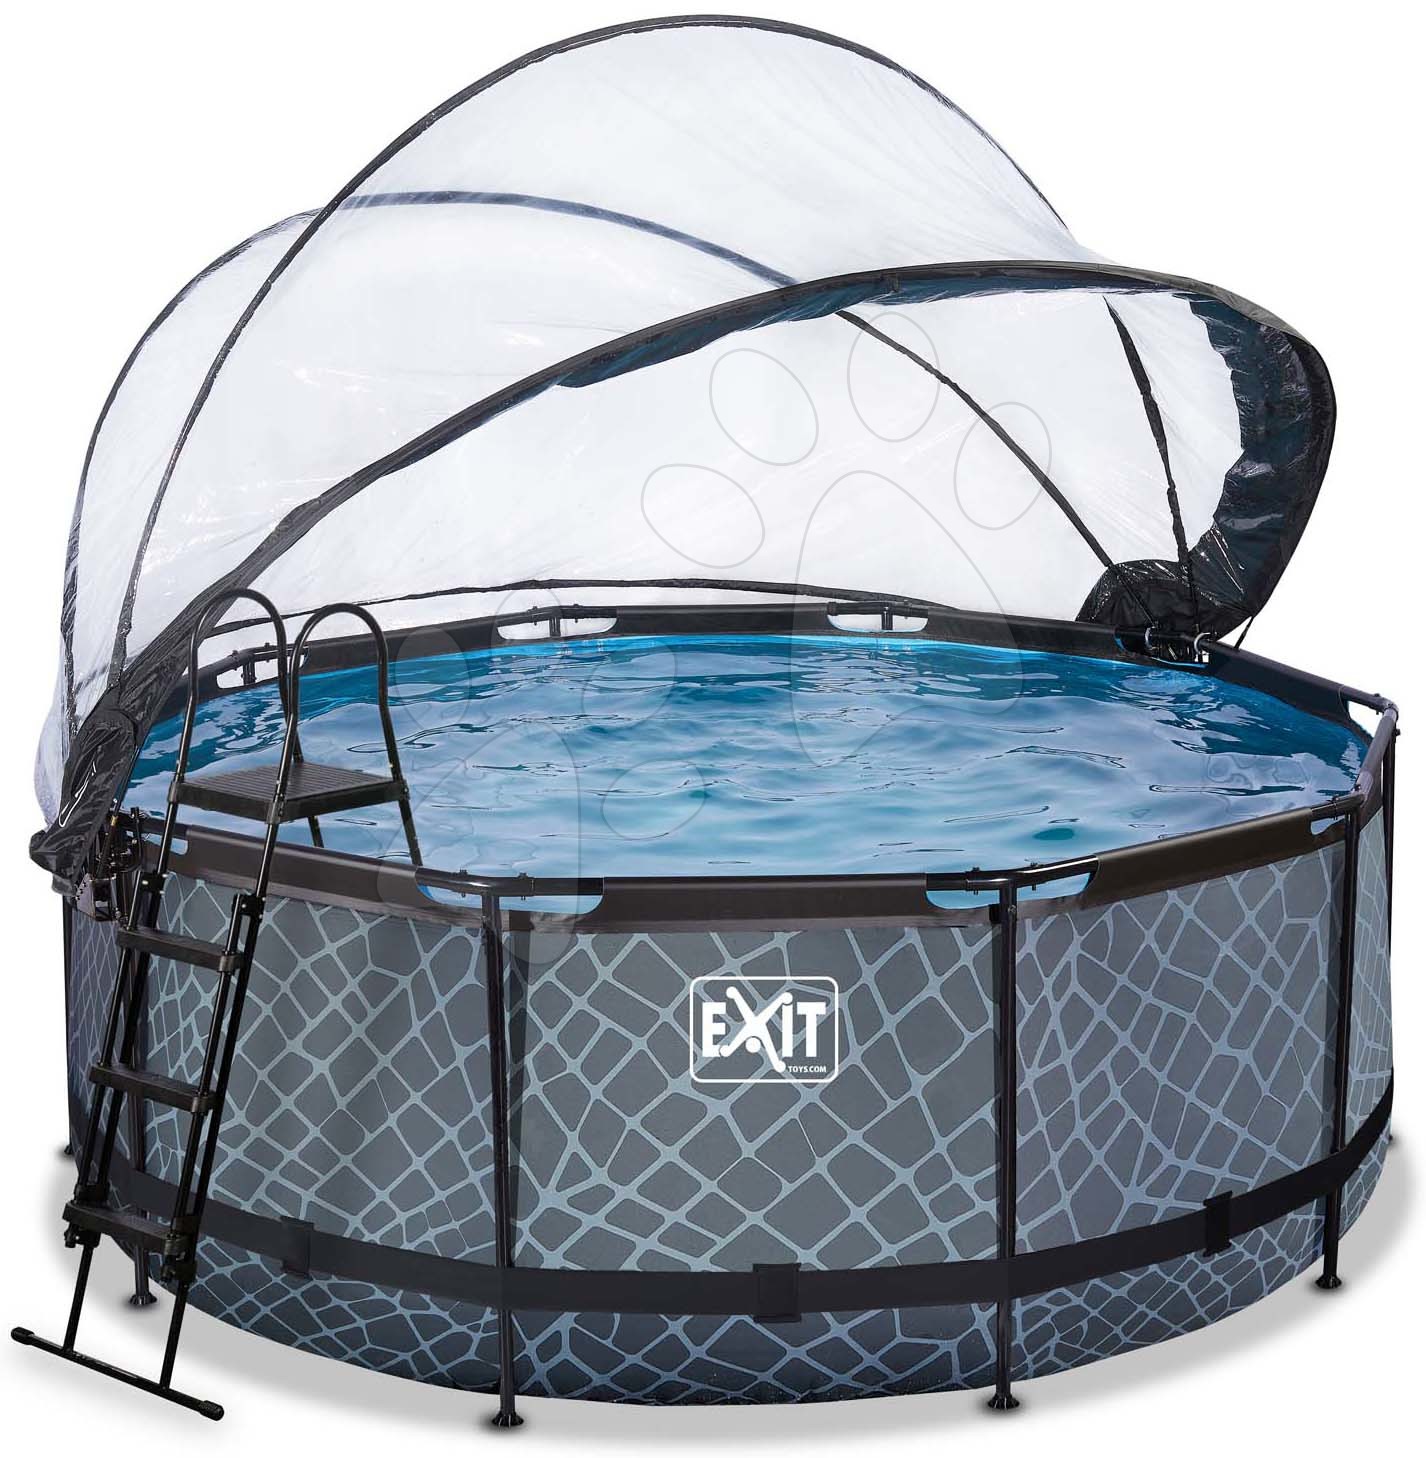 Bazén s krytem pískovou filtrací a tepelným čerpadlem Stone pool Exit Toys kruhový ocelová konstrukce 360*122 cm šedý od 6 let